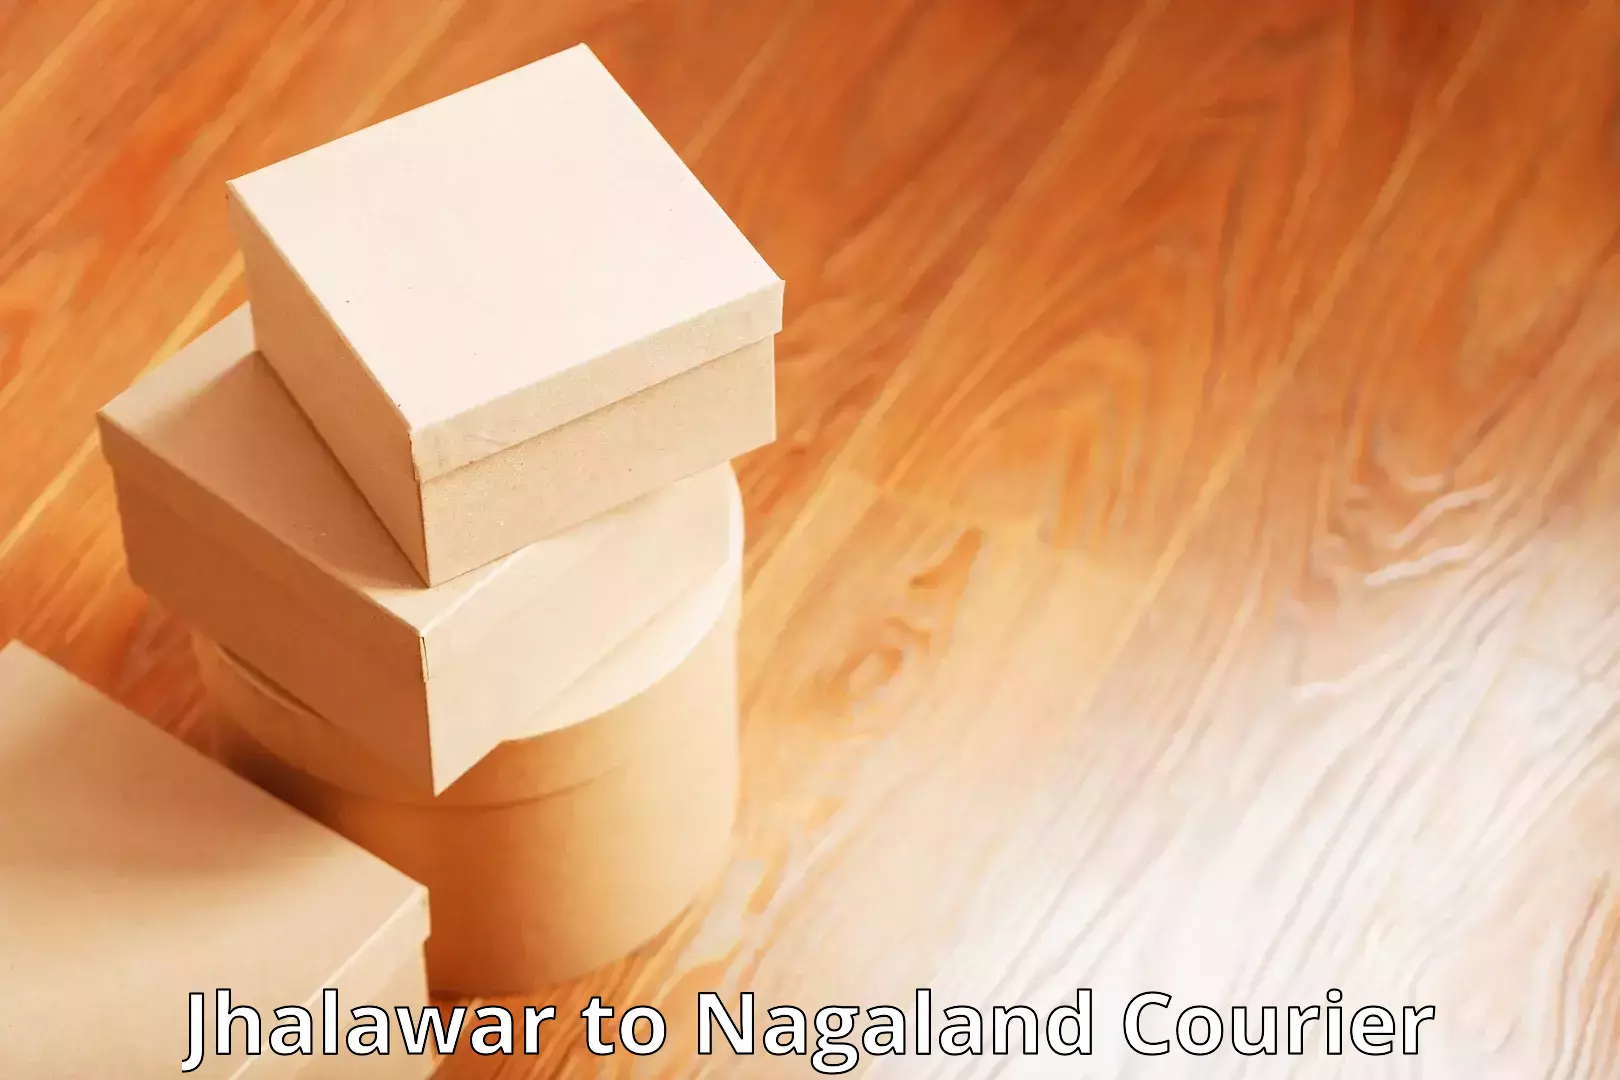 Global courier networks Jhalawar to NIT Nagaland